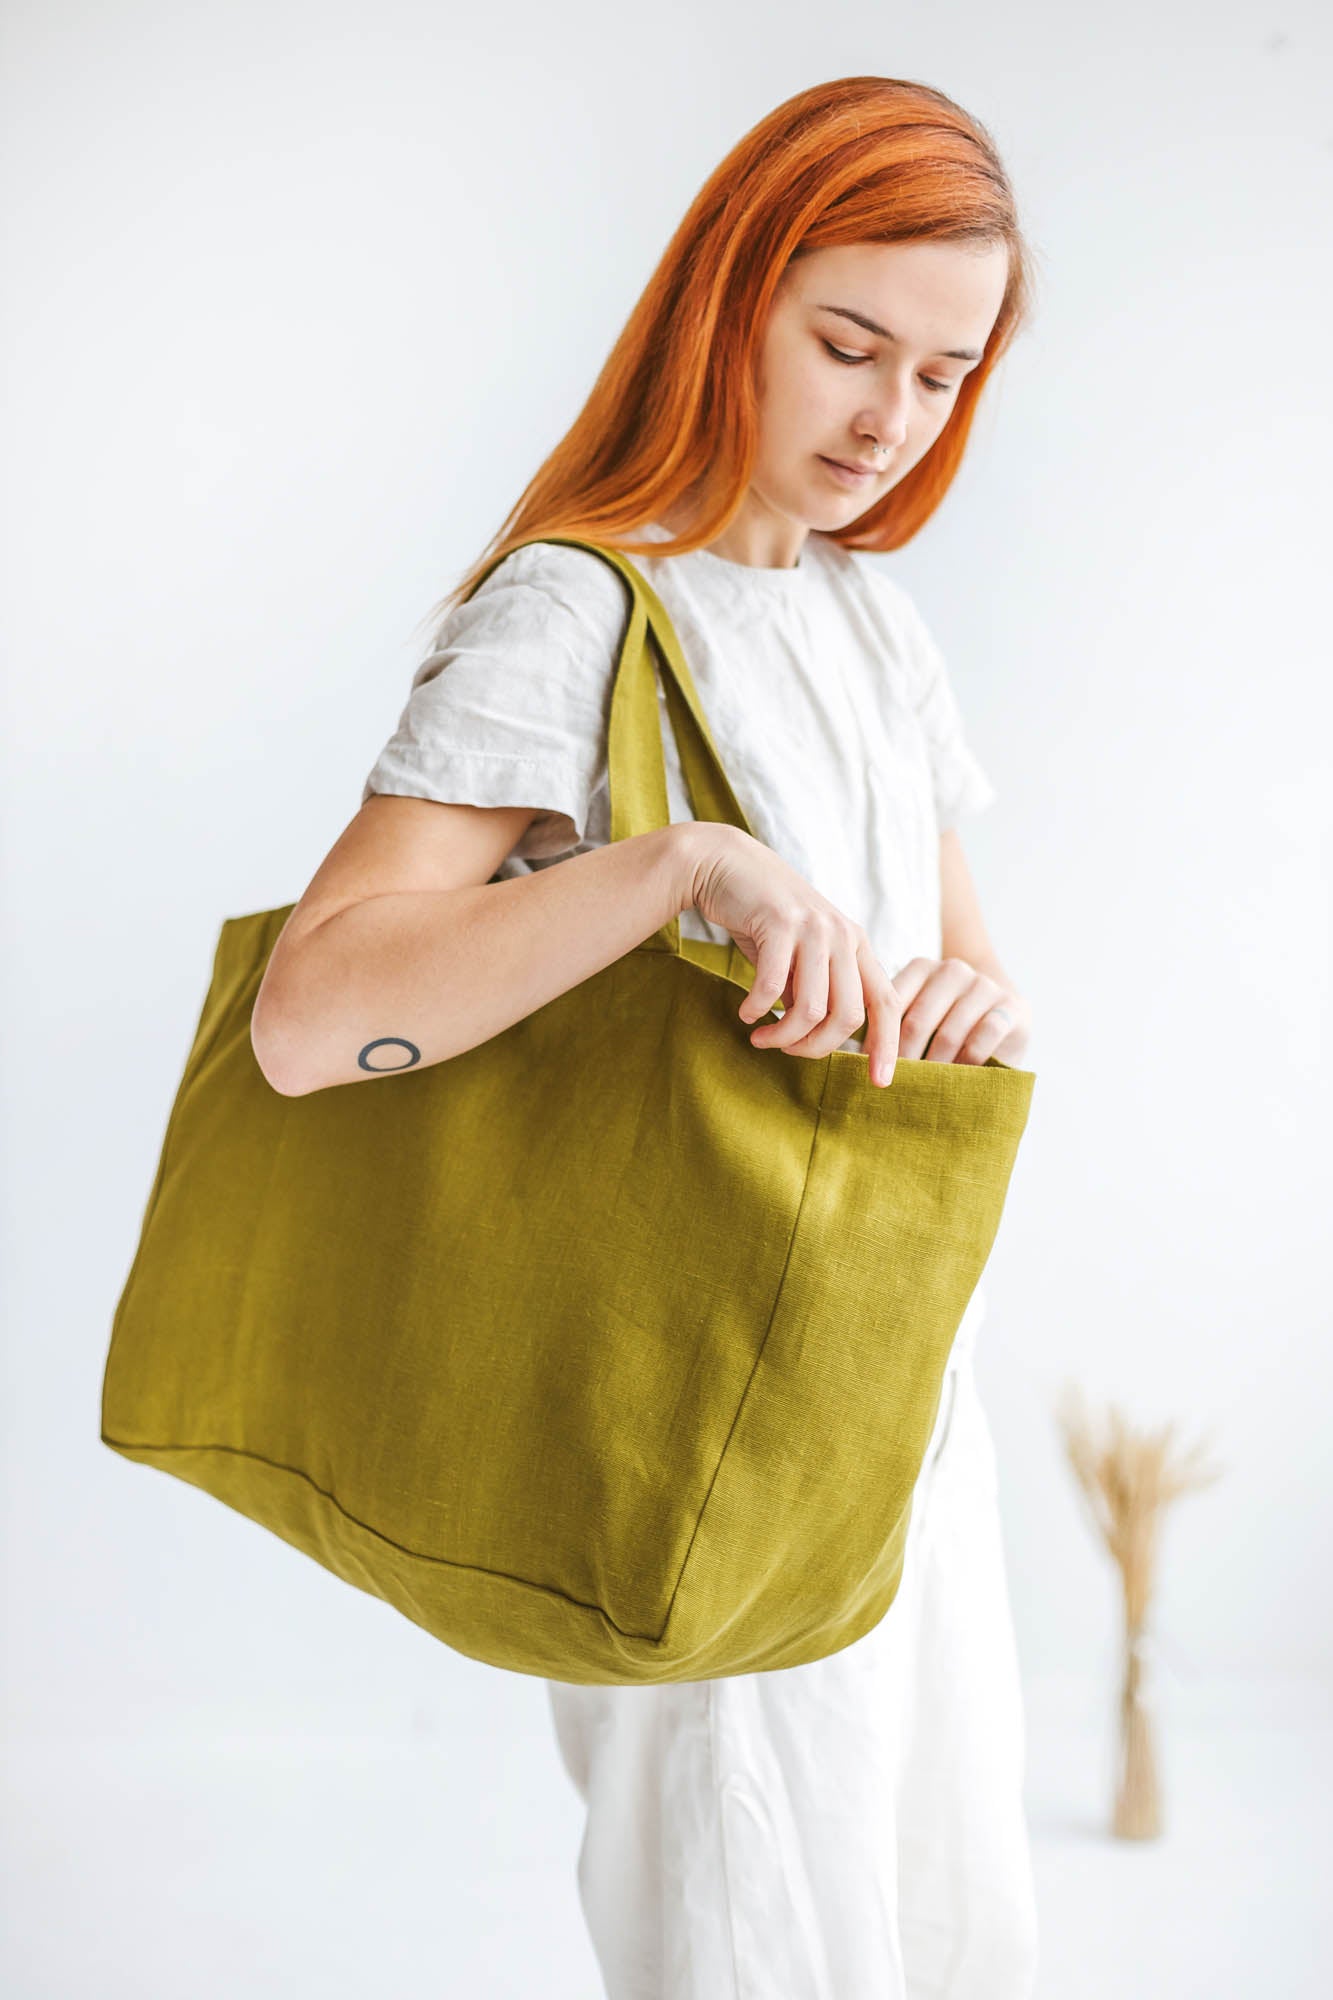 Olive green linen beach bag